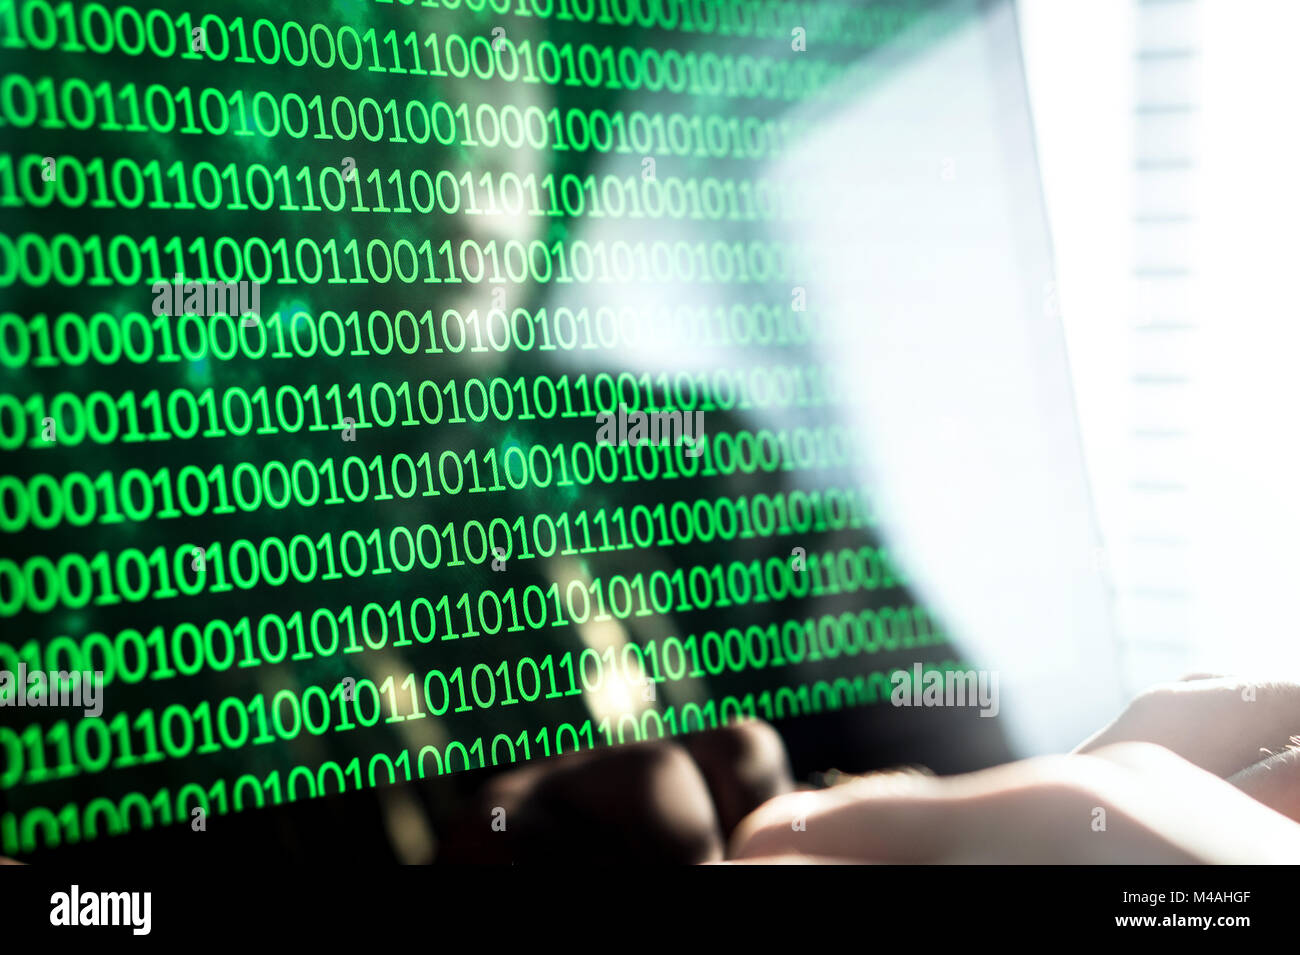 Hacker das Schreiben von Code mit Laptop. Binäre Zahlen, Null und Eins auf Monitor. Cyber Bedrohung, Angriff und online Kriminalität Konzept. Stockfoto